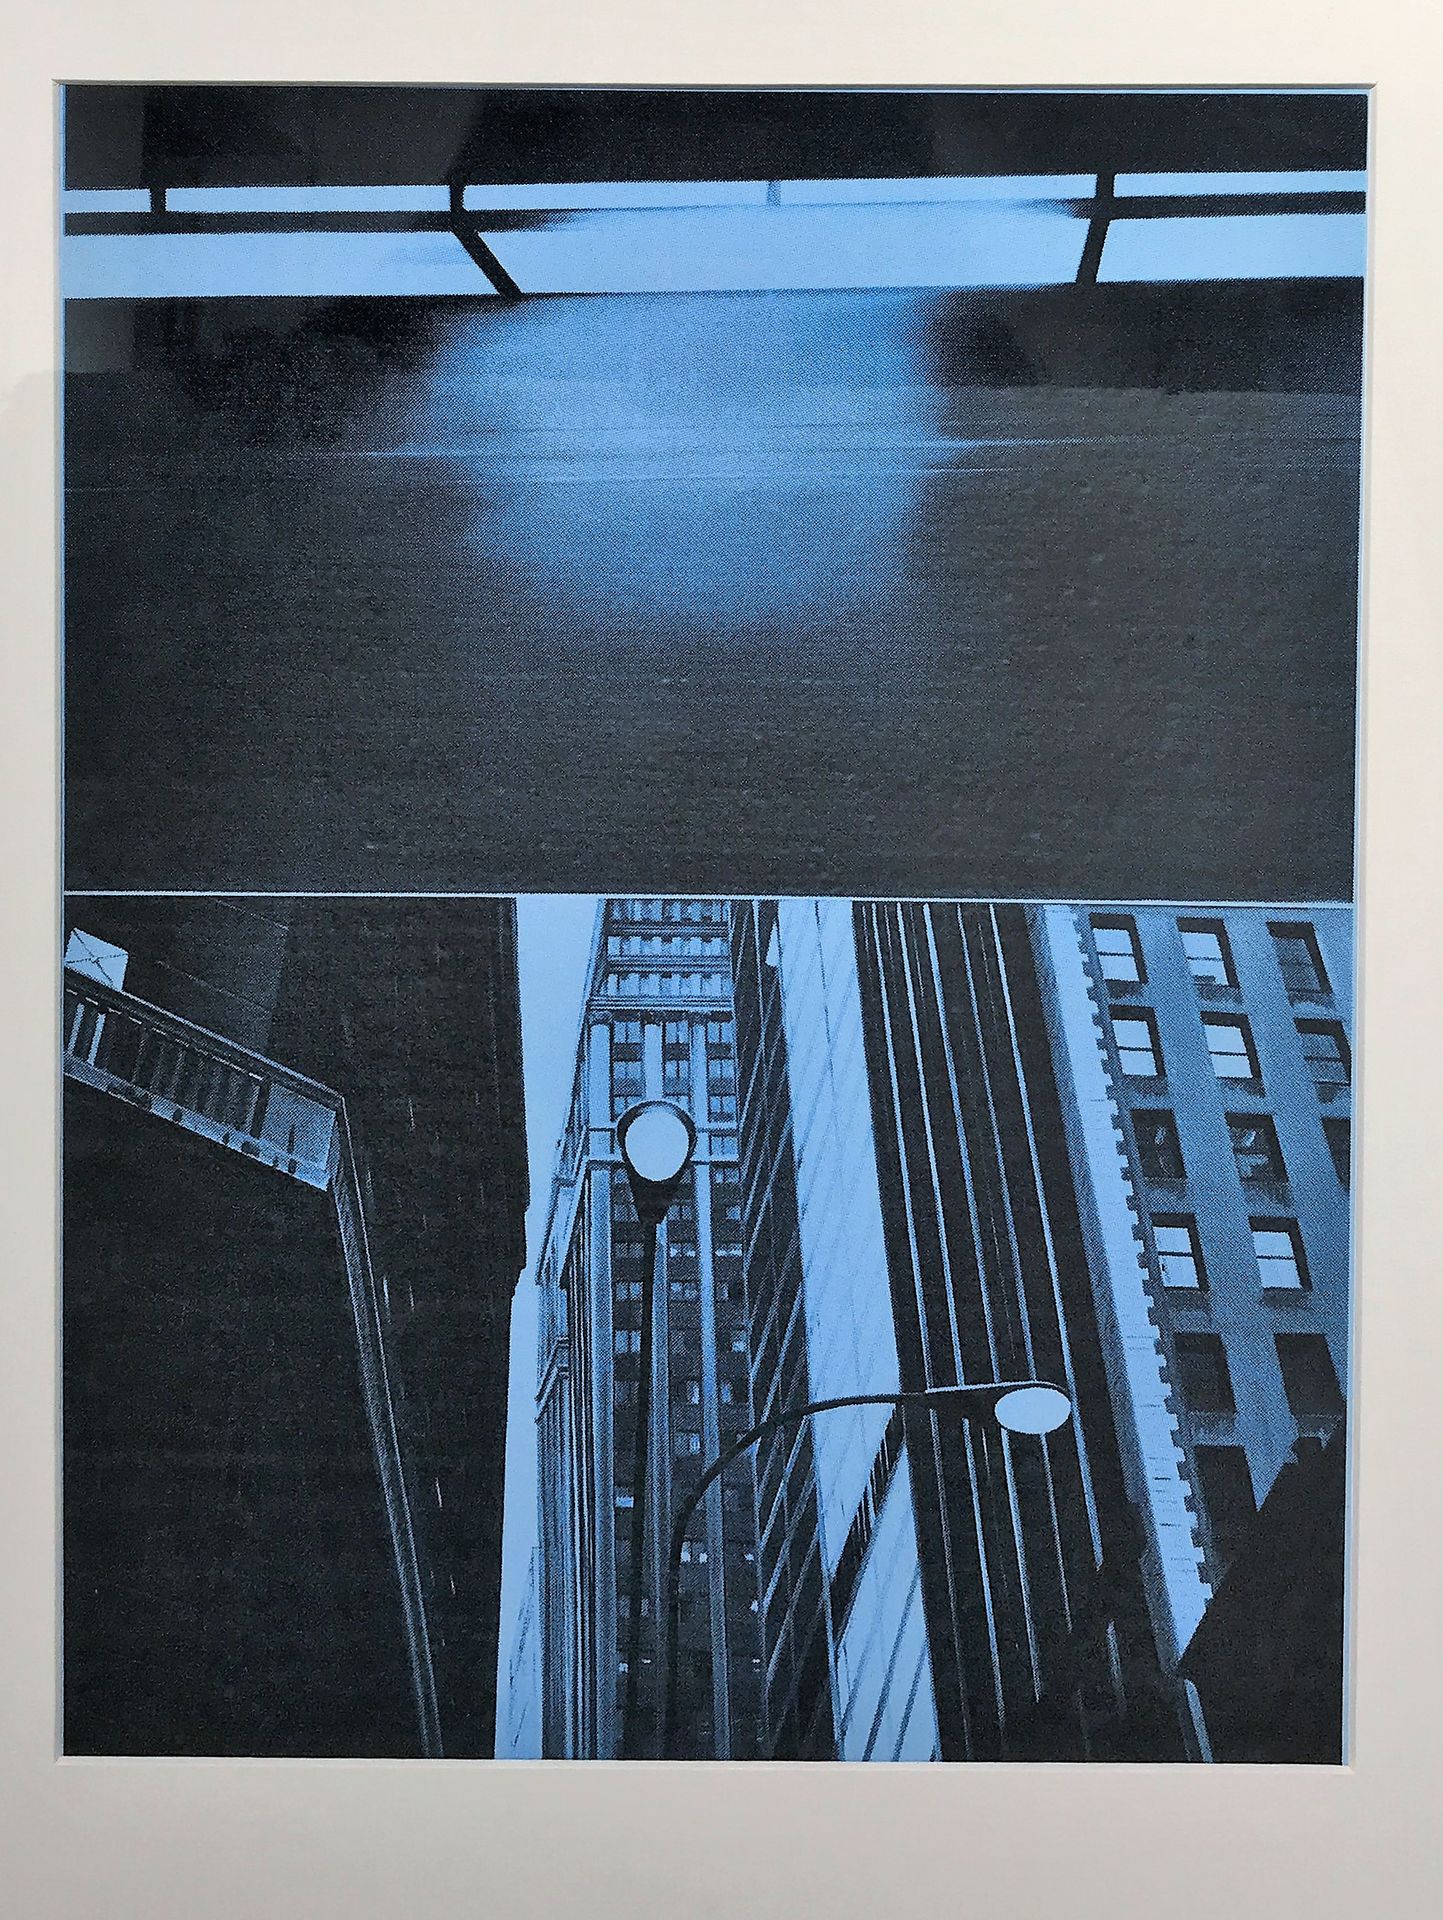 Null Jacques MONORY (1924-2018)

Lampadaire

Sérigraphie

36 x 26,5 cm à vue